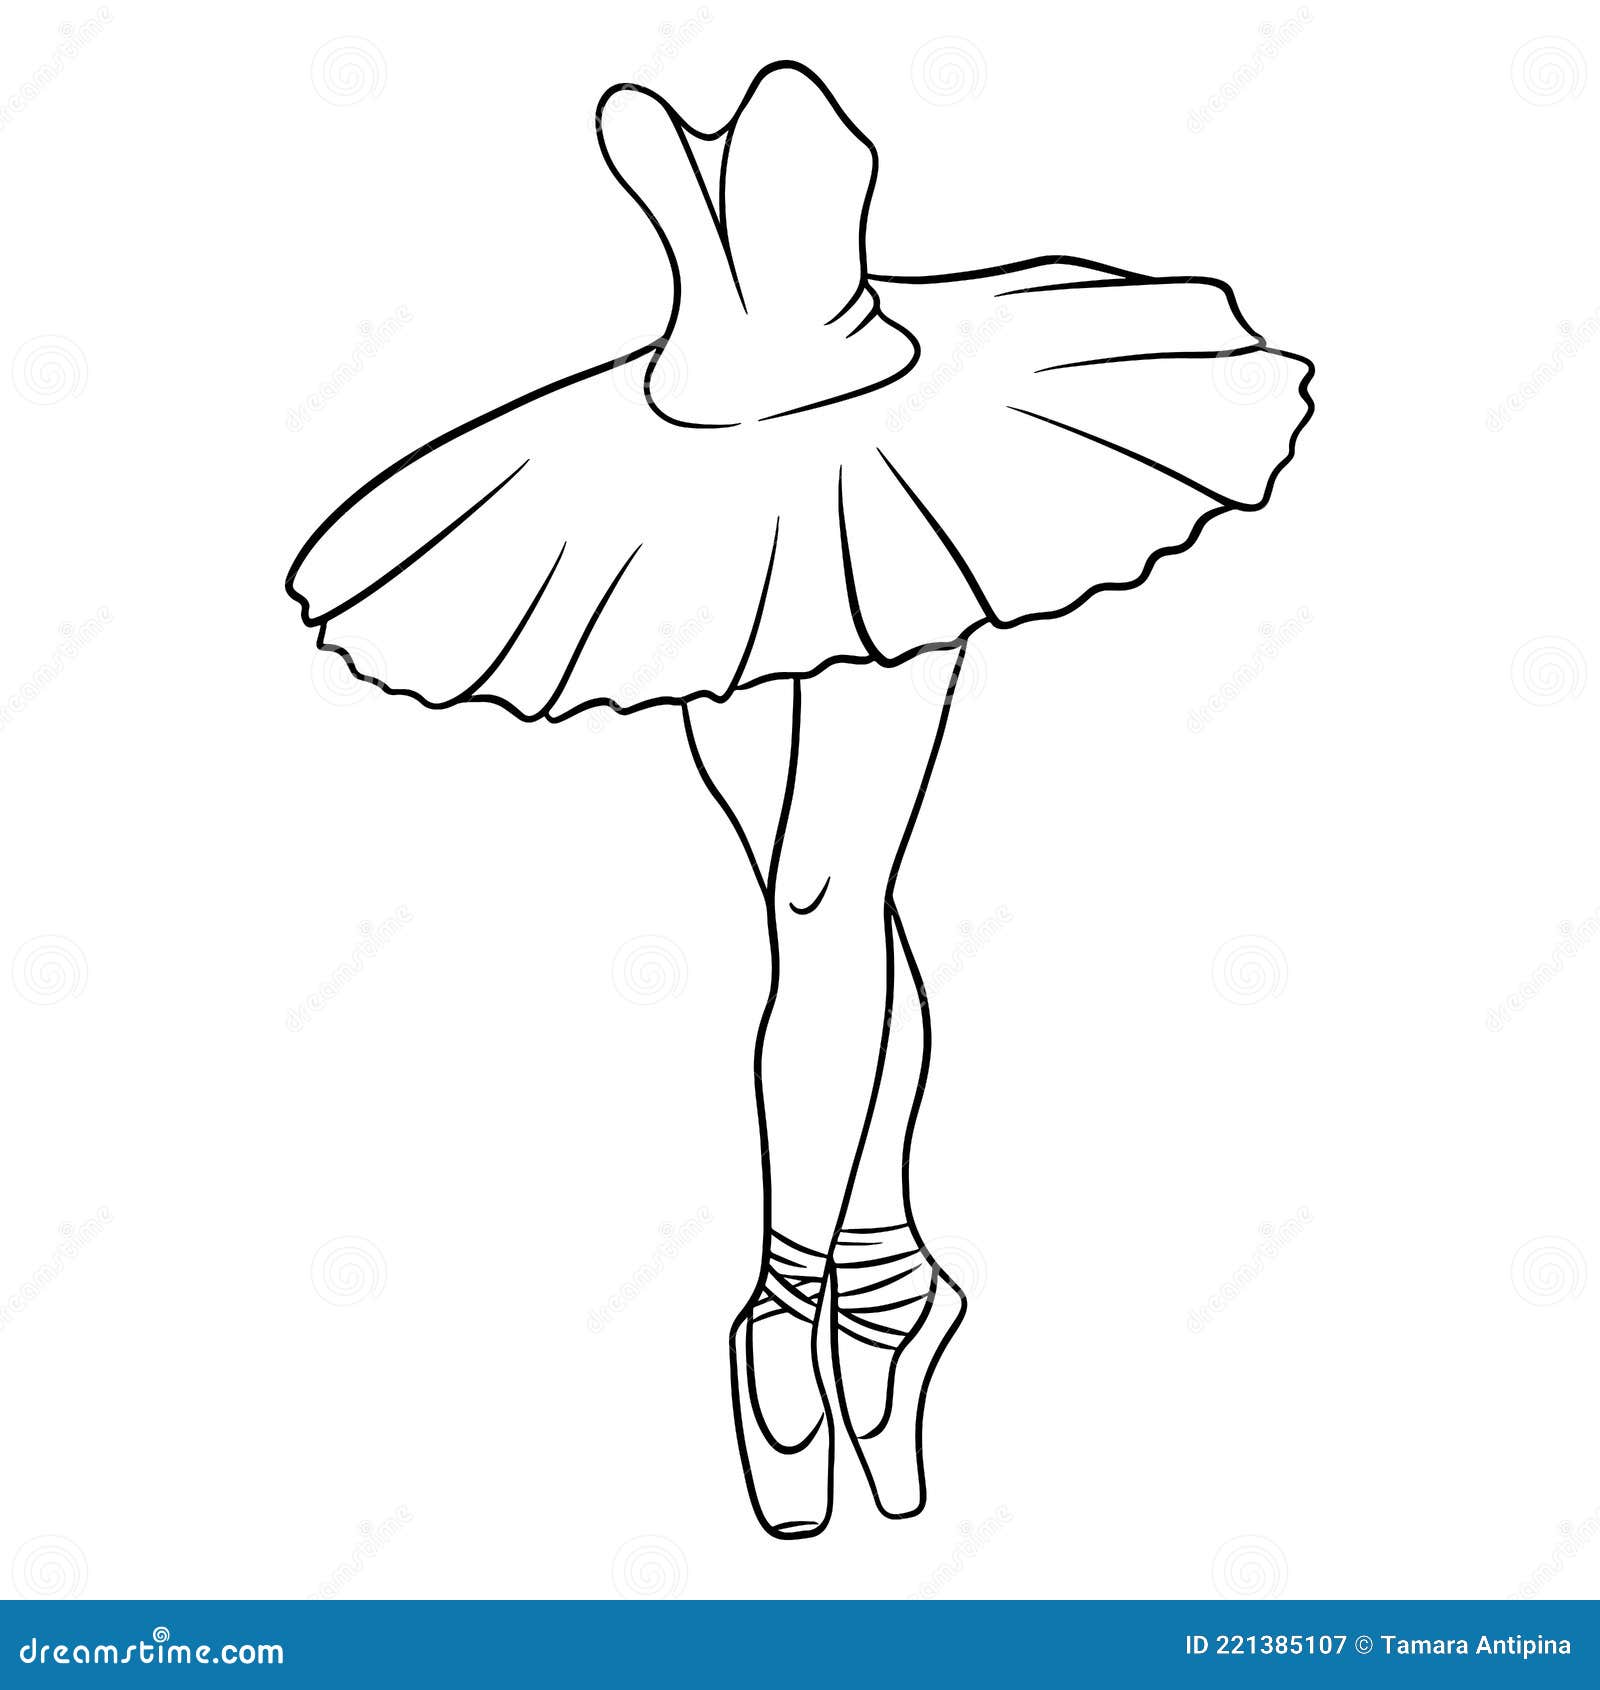 Bailarina con pierna levantada - Cristina Ilustraciones y diseño gráfico